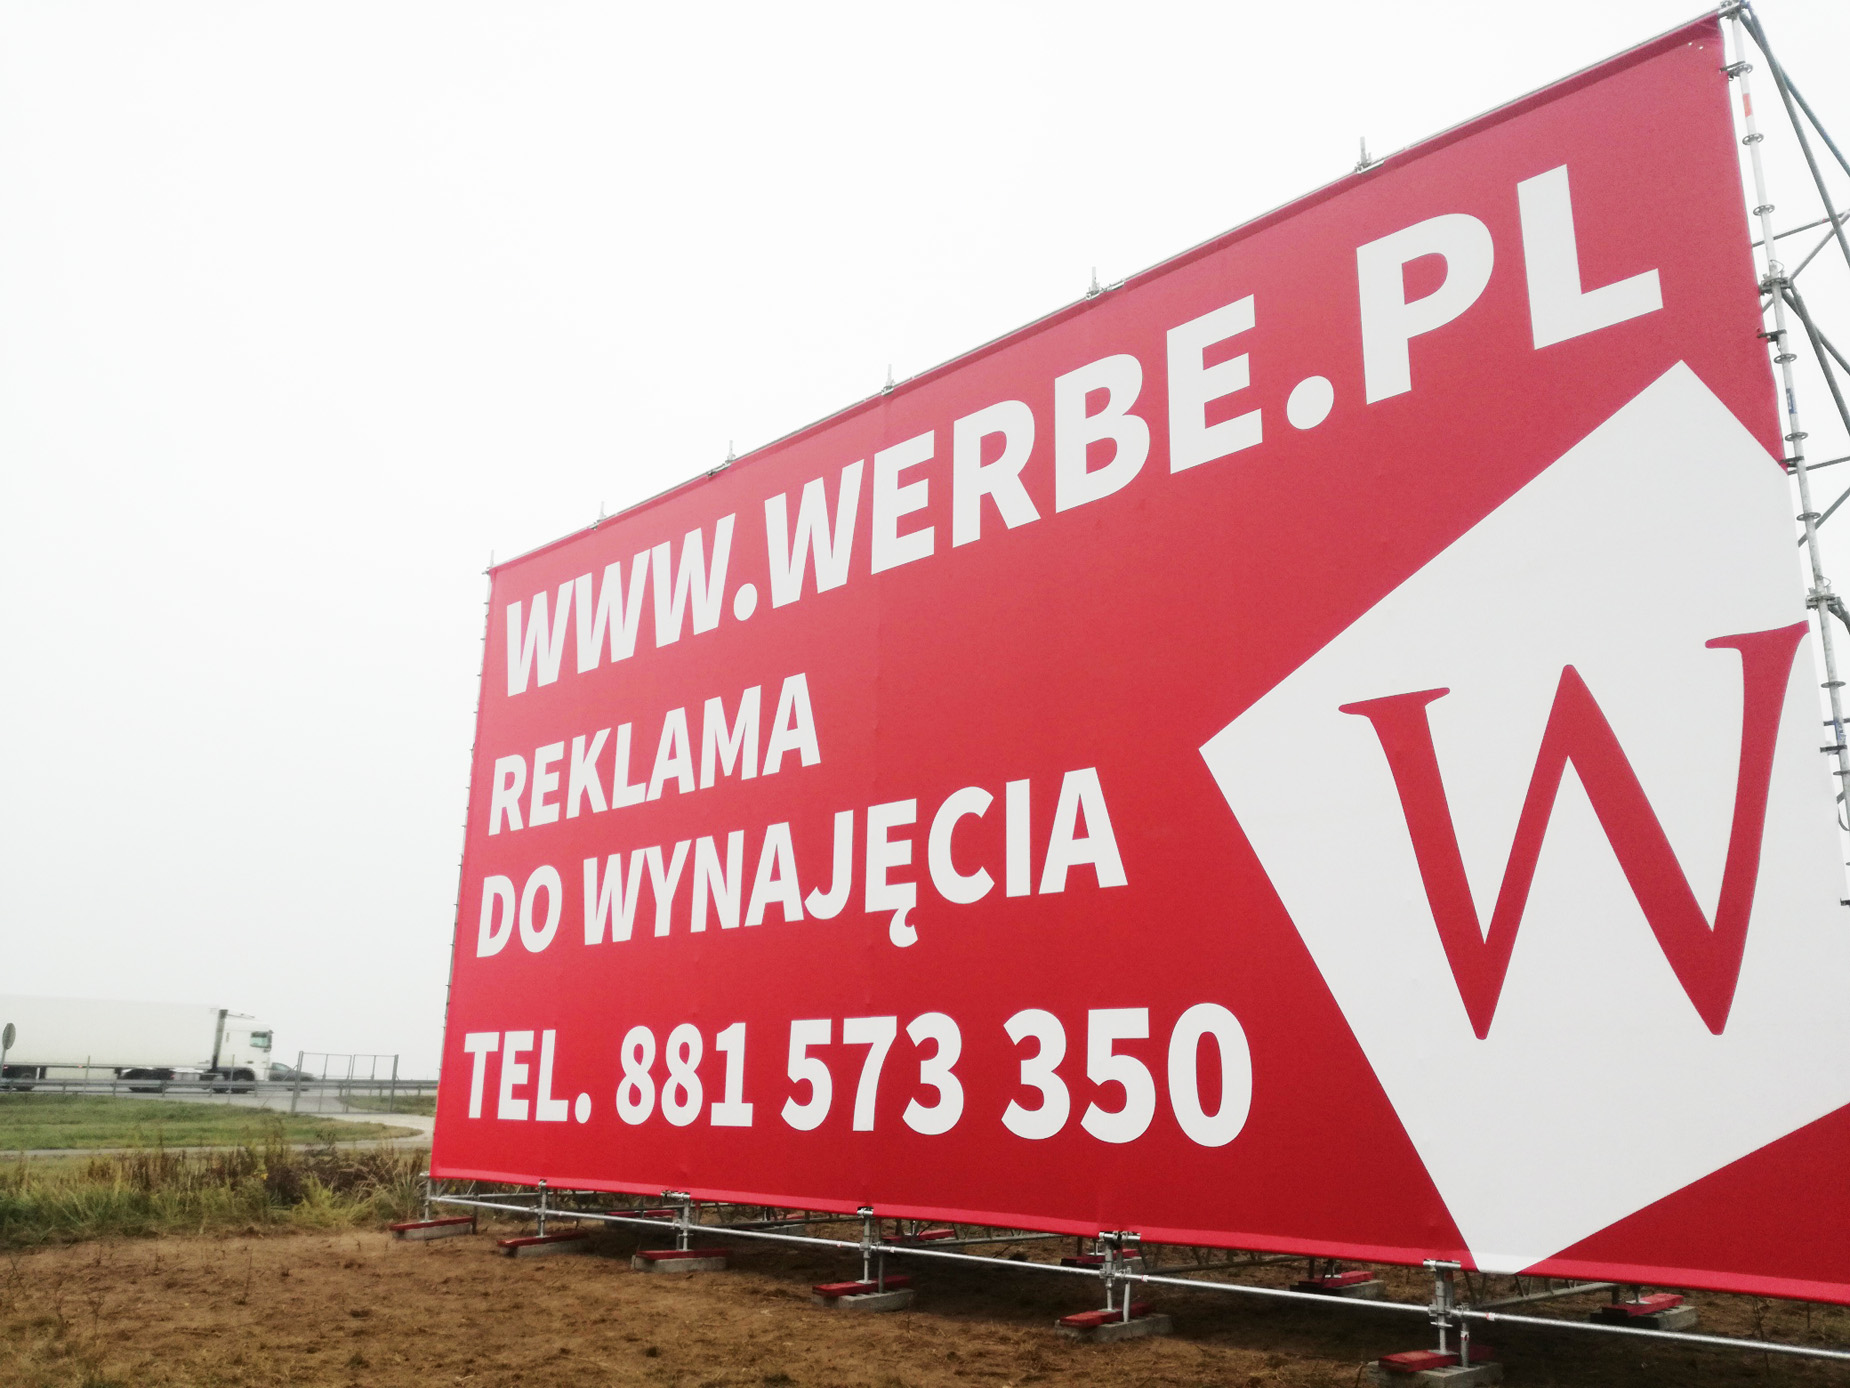 1) Lokalizacja: Megaboard, billboard reklama przy autostradzie A2 Łódź - Warszawa